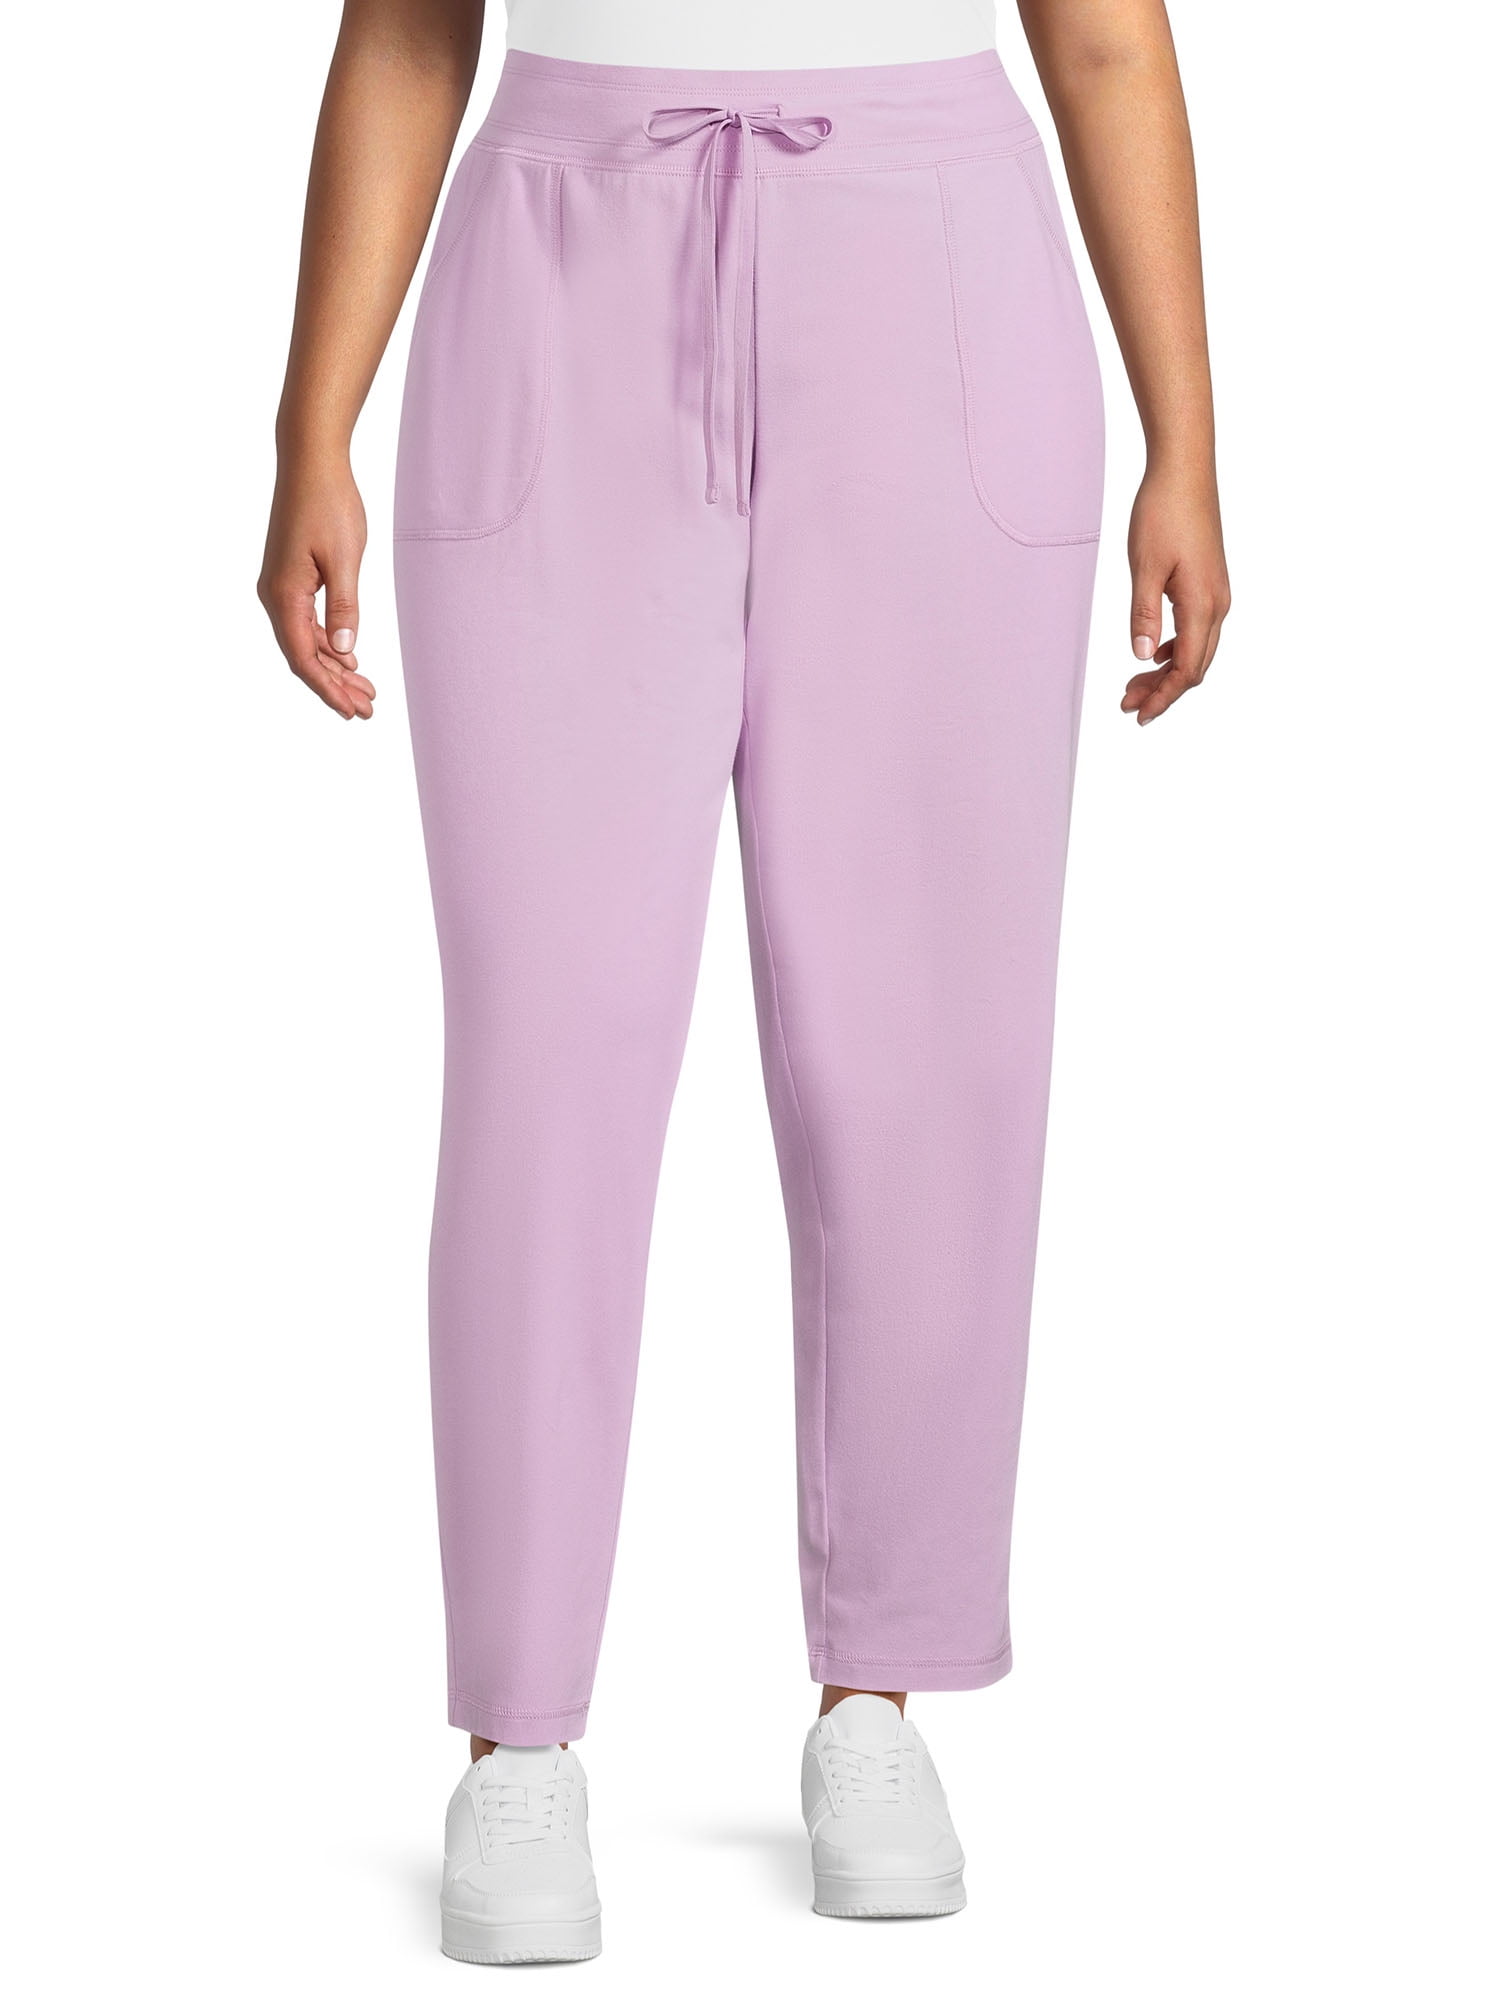 Chicos Design Pants Sz 2 Womens L Purple Knit Kuwait